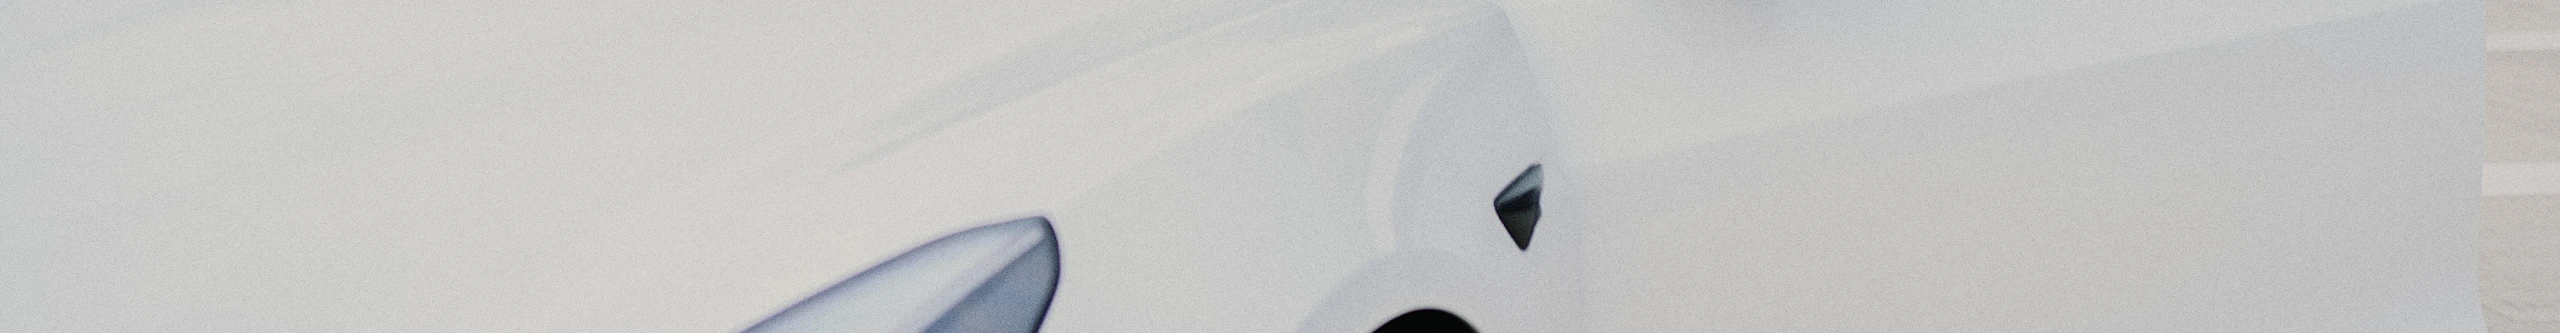 Närbild av en vit bil.